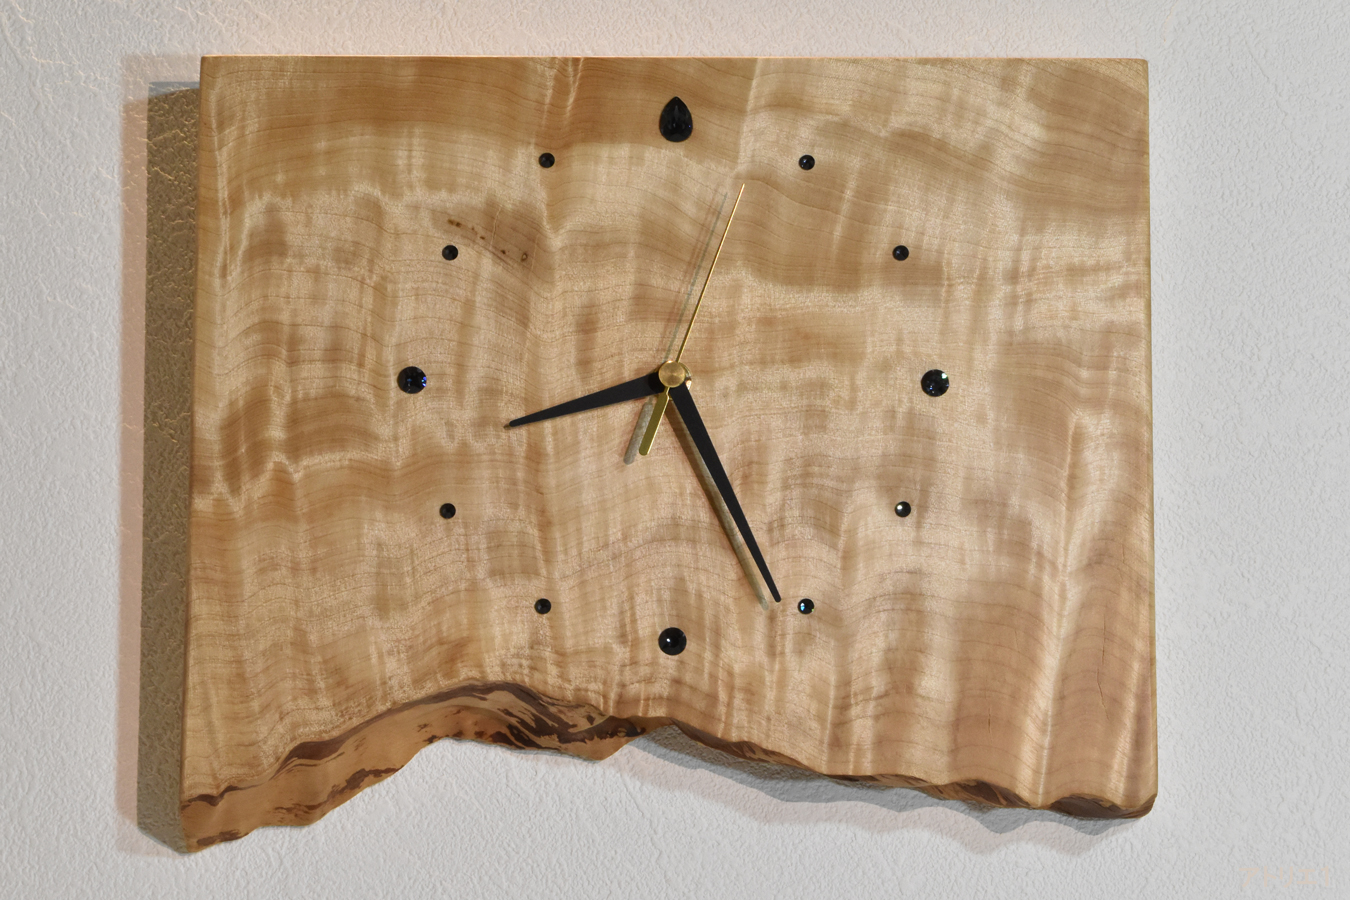 この時計に使用している栃の木には縮み杢が現れており、そのシルクのカーテンのように輝く様は、まるで北欧やカナダ、南極などの空に浮かぶオーロラのようです。これは、一度はその本物の輝きを見たいものと思っている方に飾っていただきたい時計です。